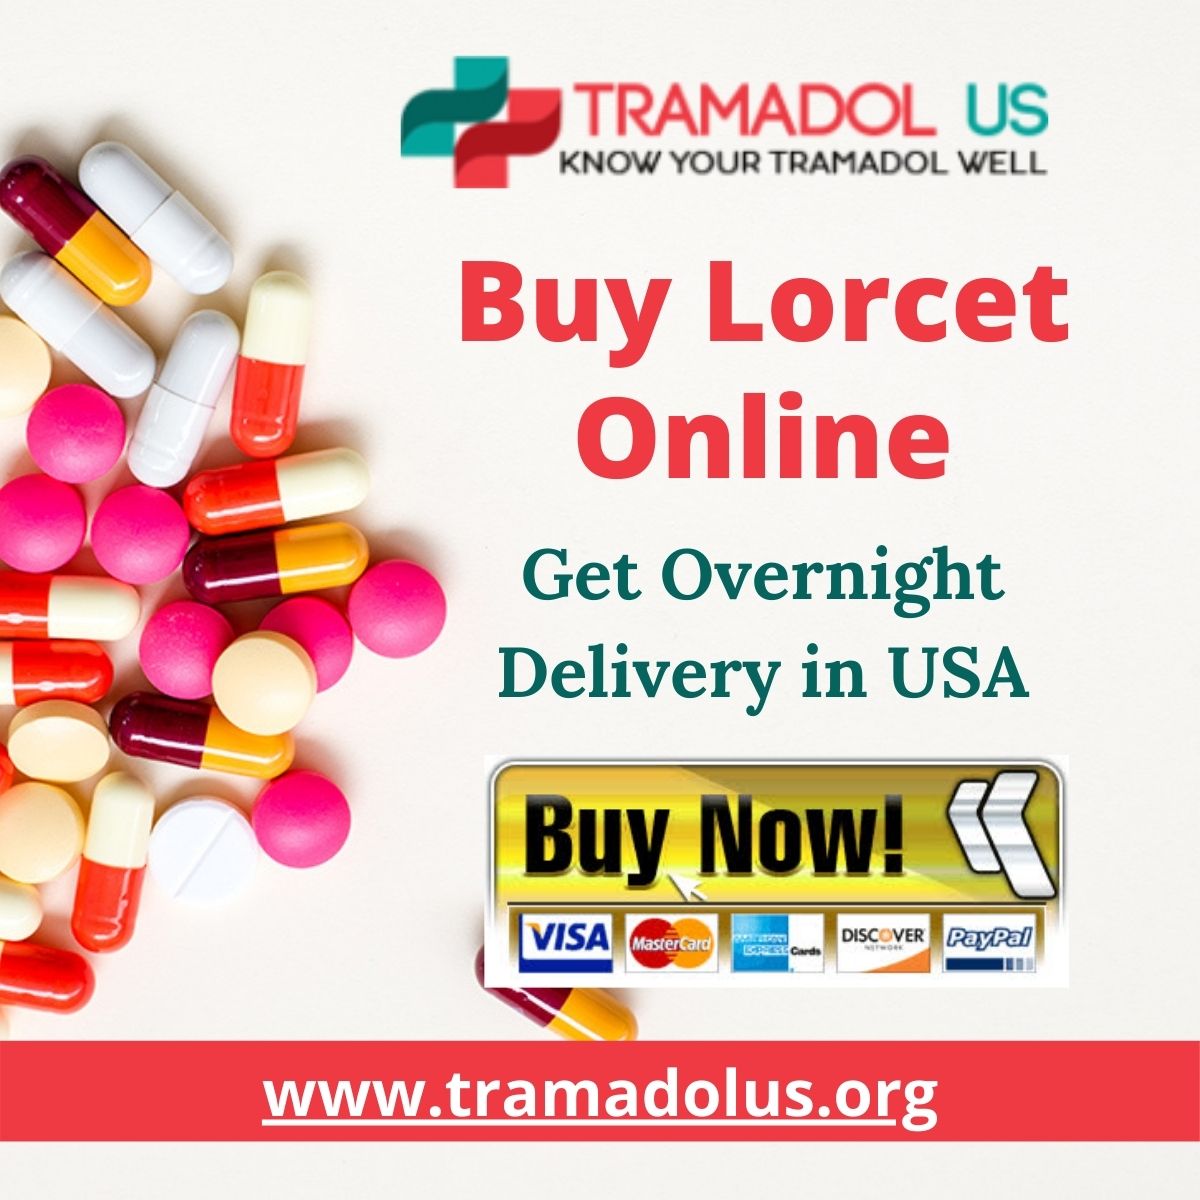 Buy Lorcet Online (1)